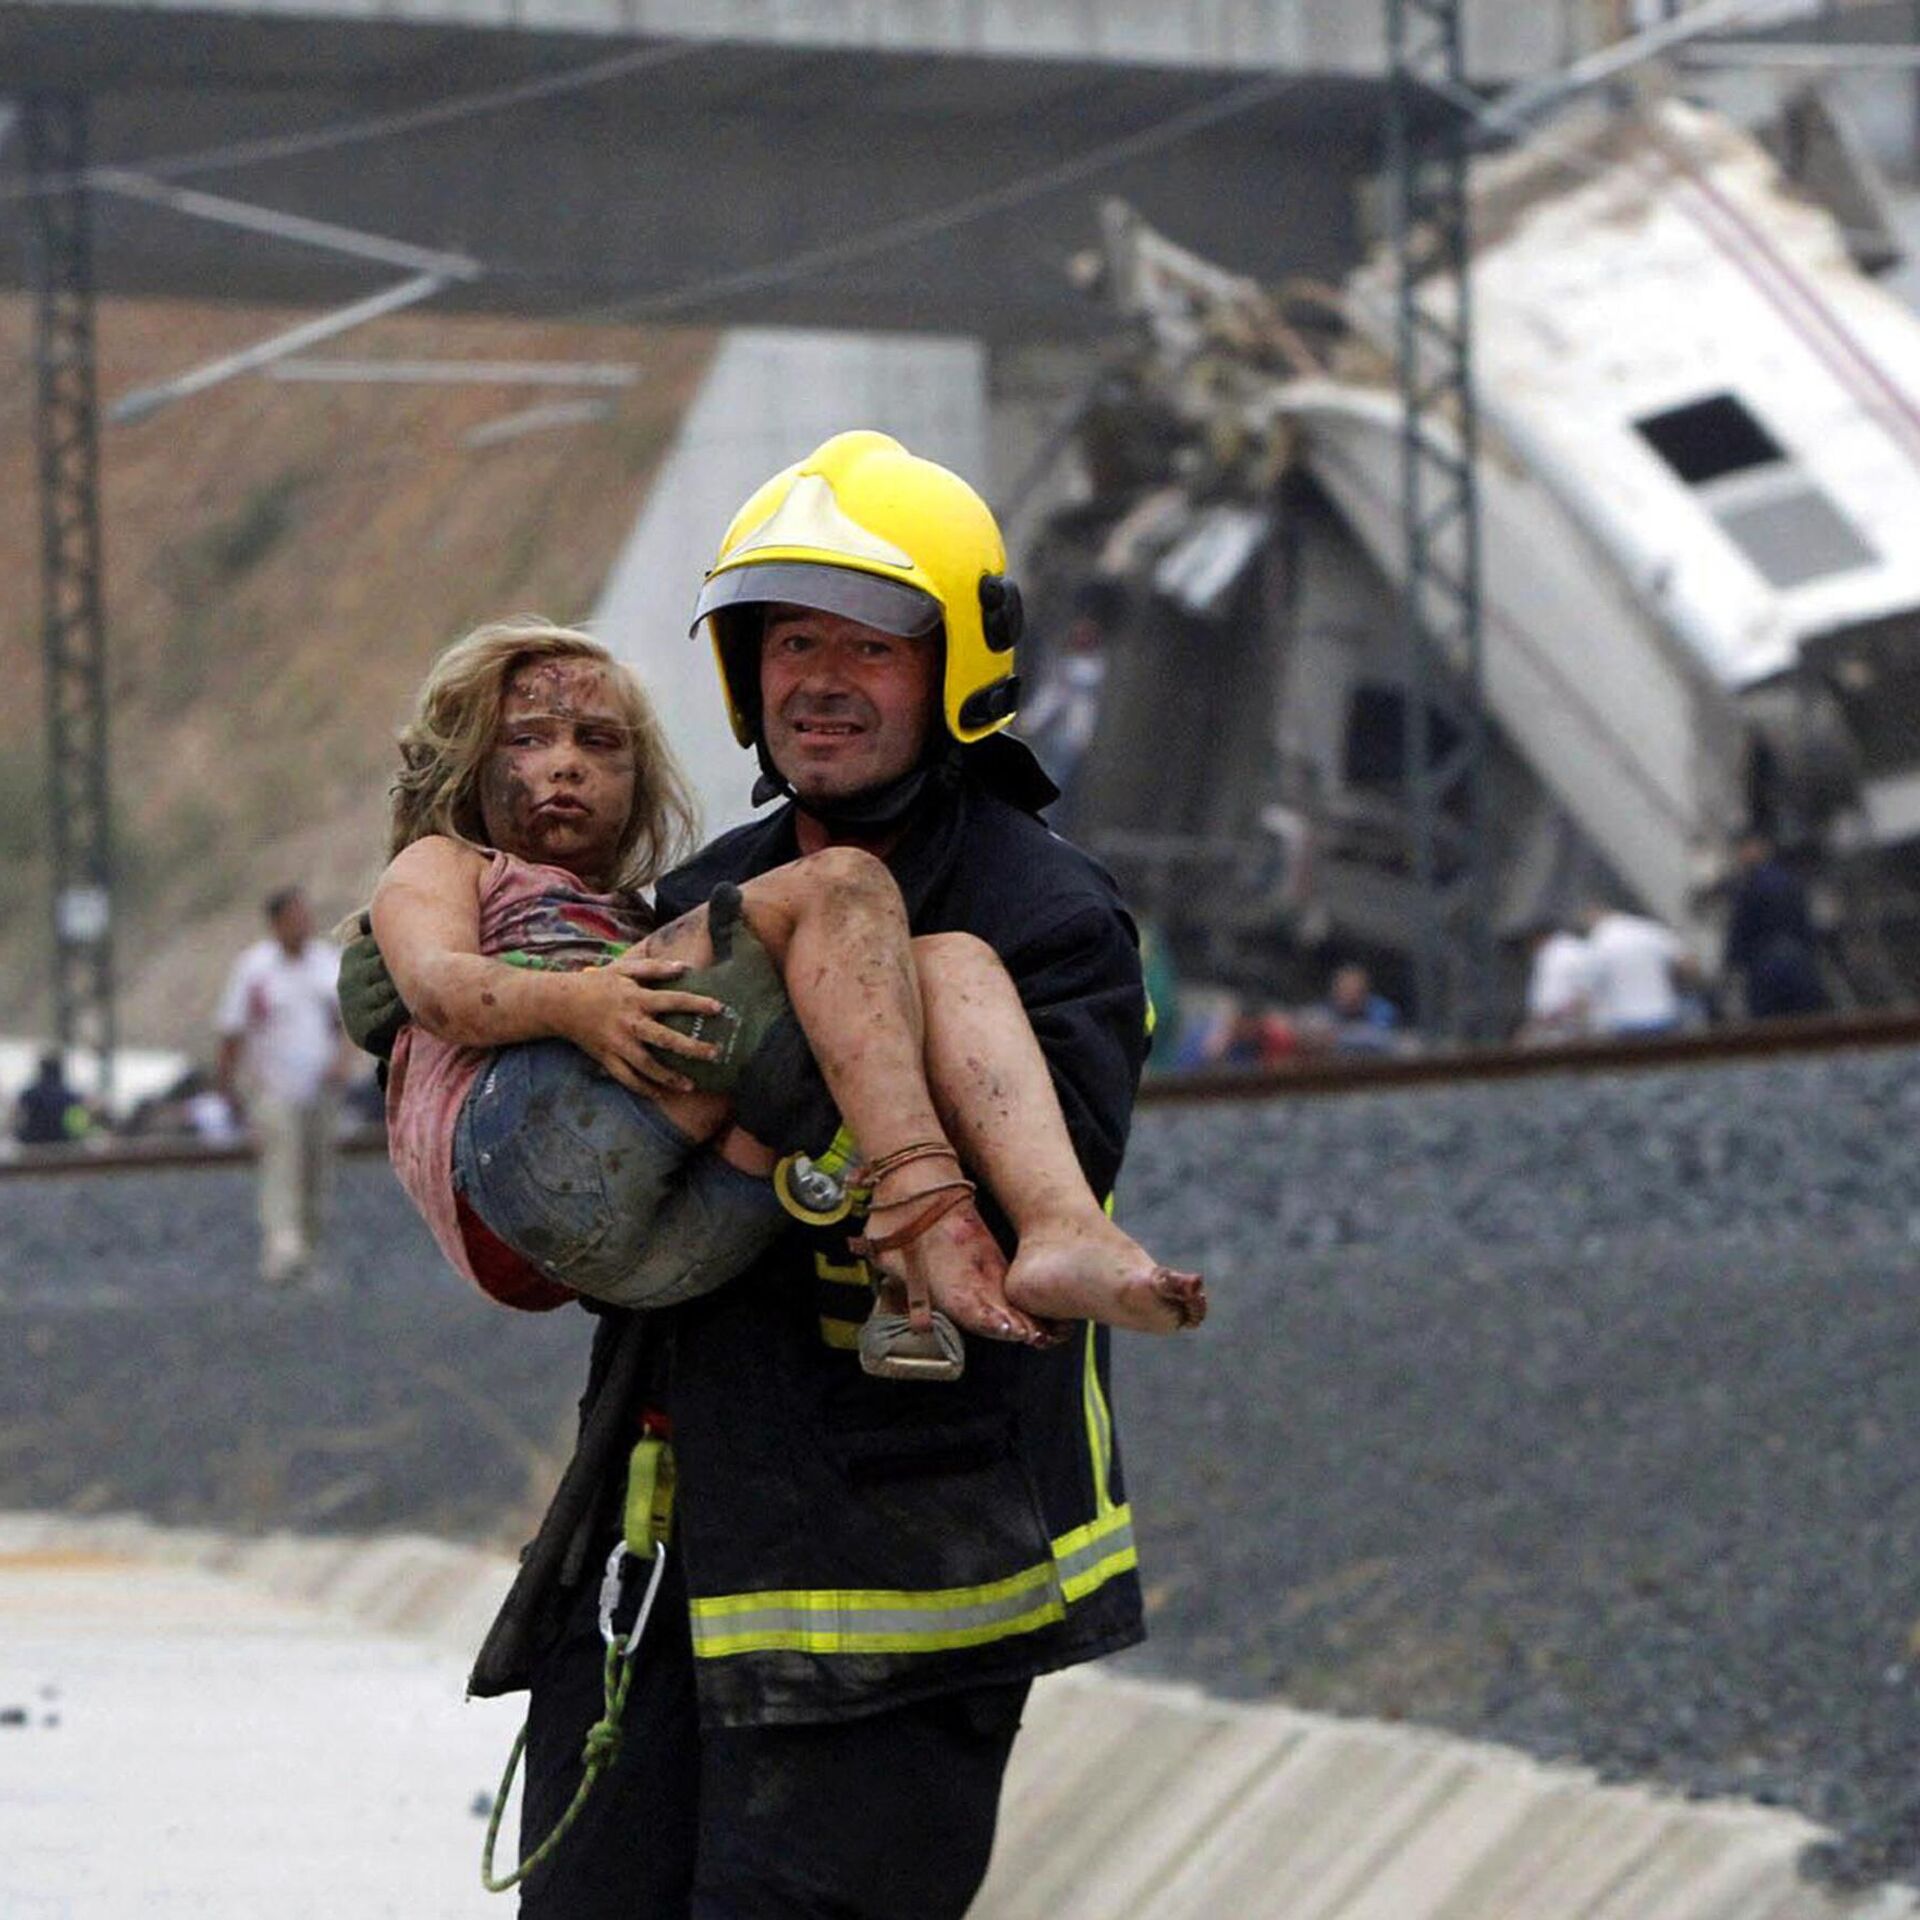 Спасение людей в первоочередном порядке. Спасатели спасают людей. Пожарные спасают людей.